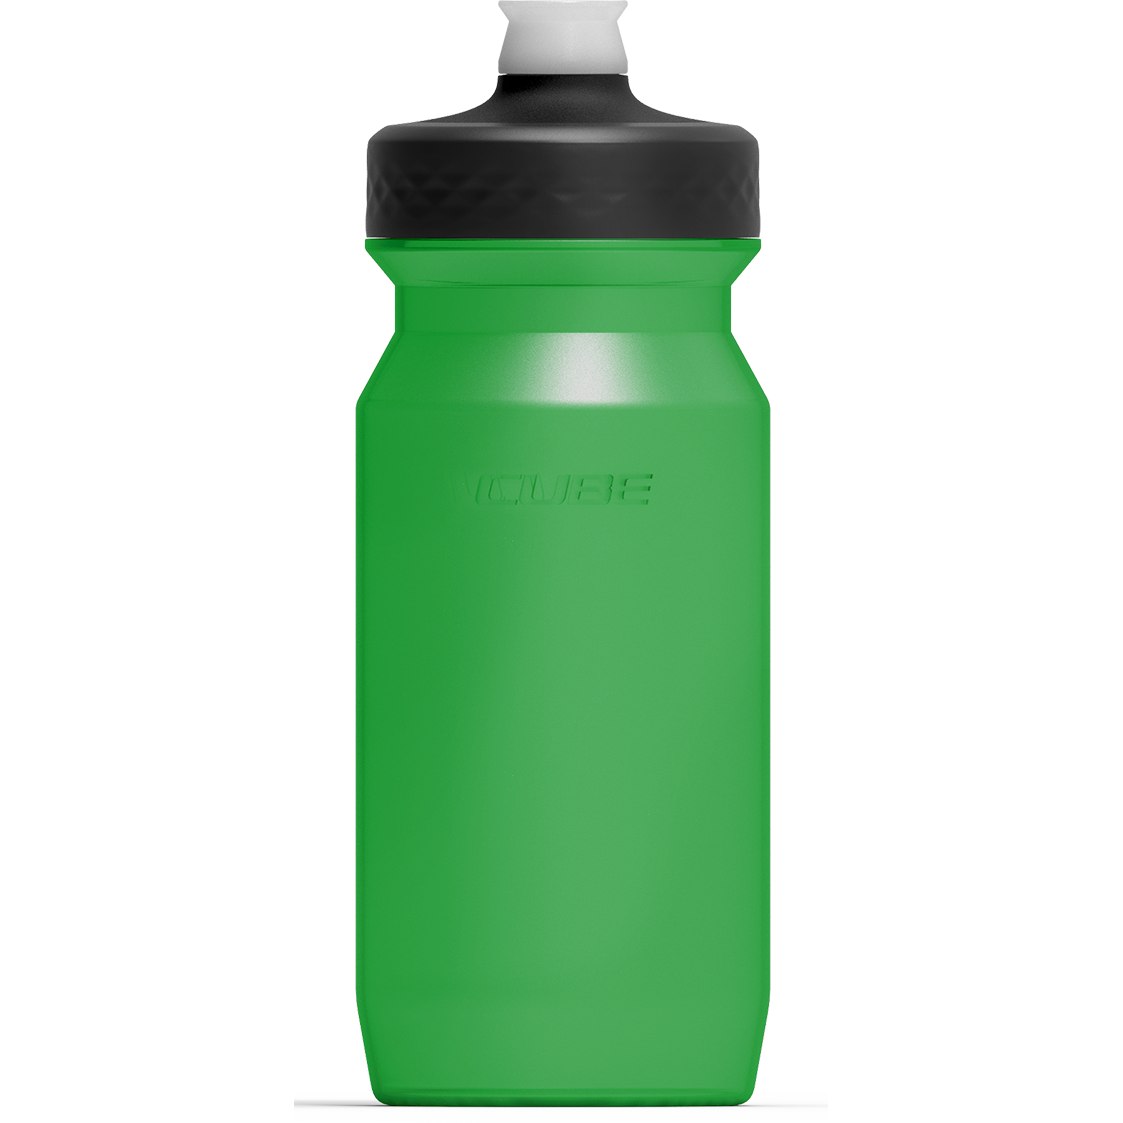 Produktbild von CUBE Trinkflasche Grip 0.5l - green